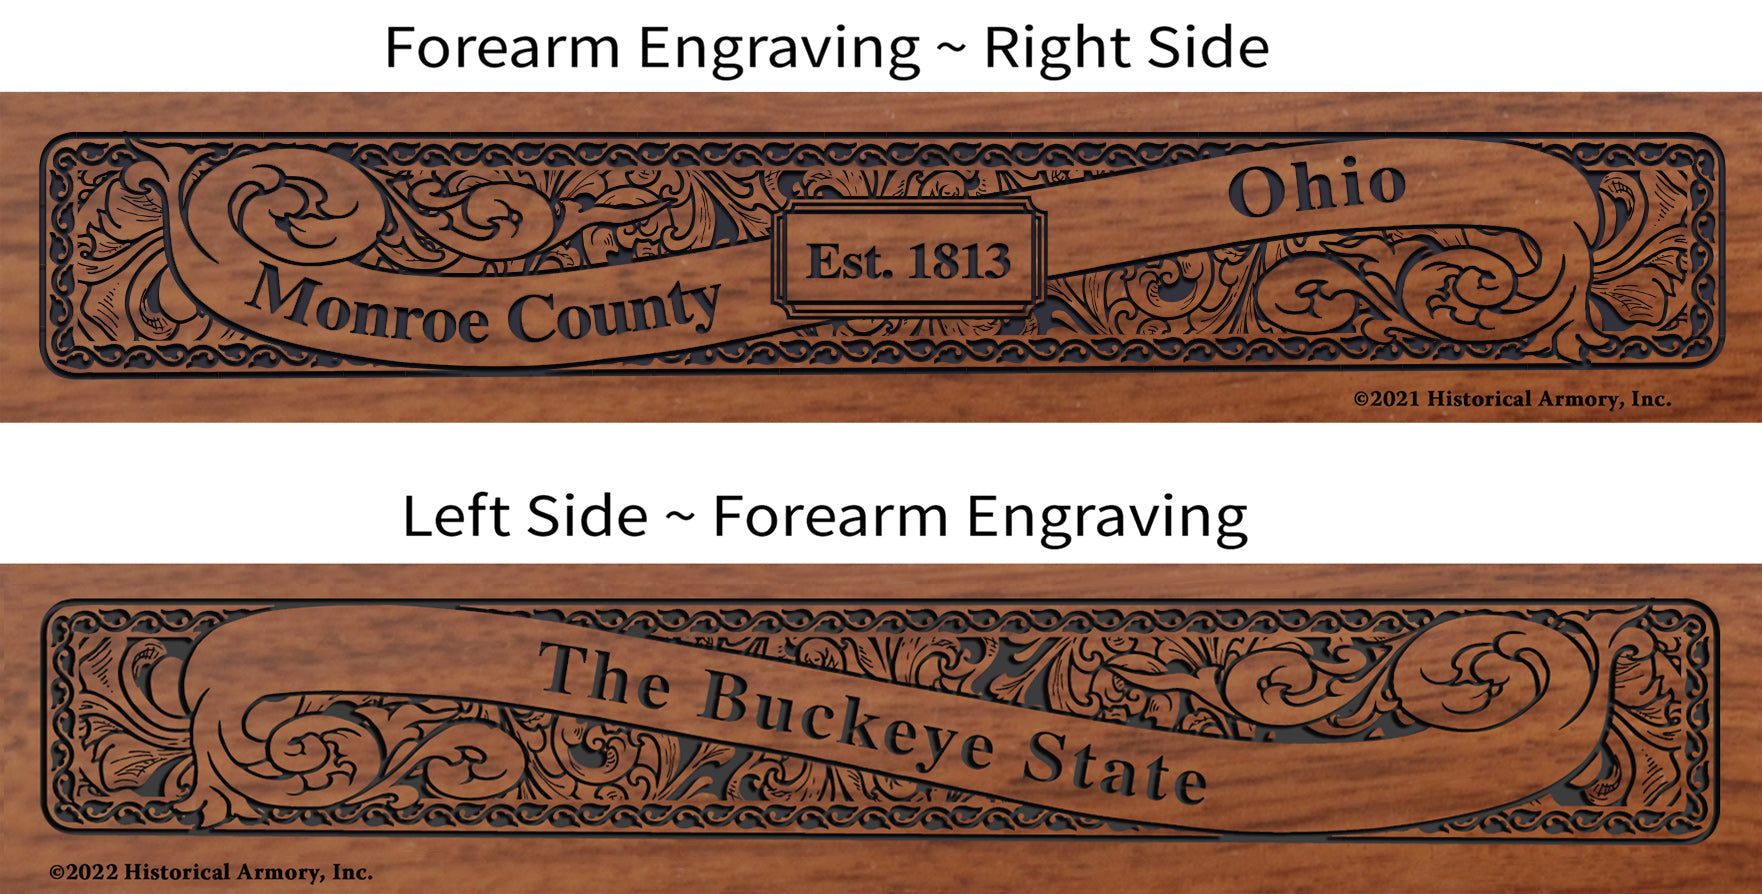 Monroe County Ohio Engraved Rifle Forearm